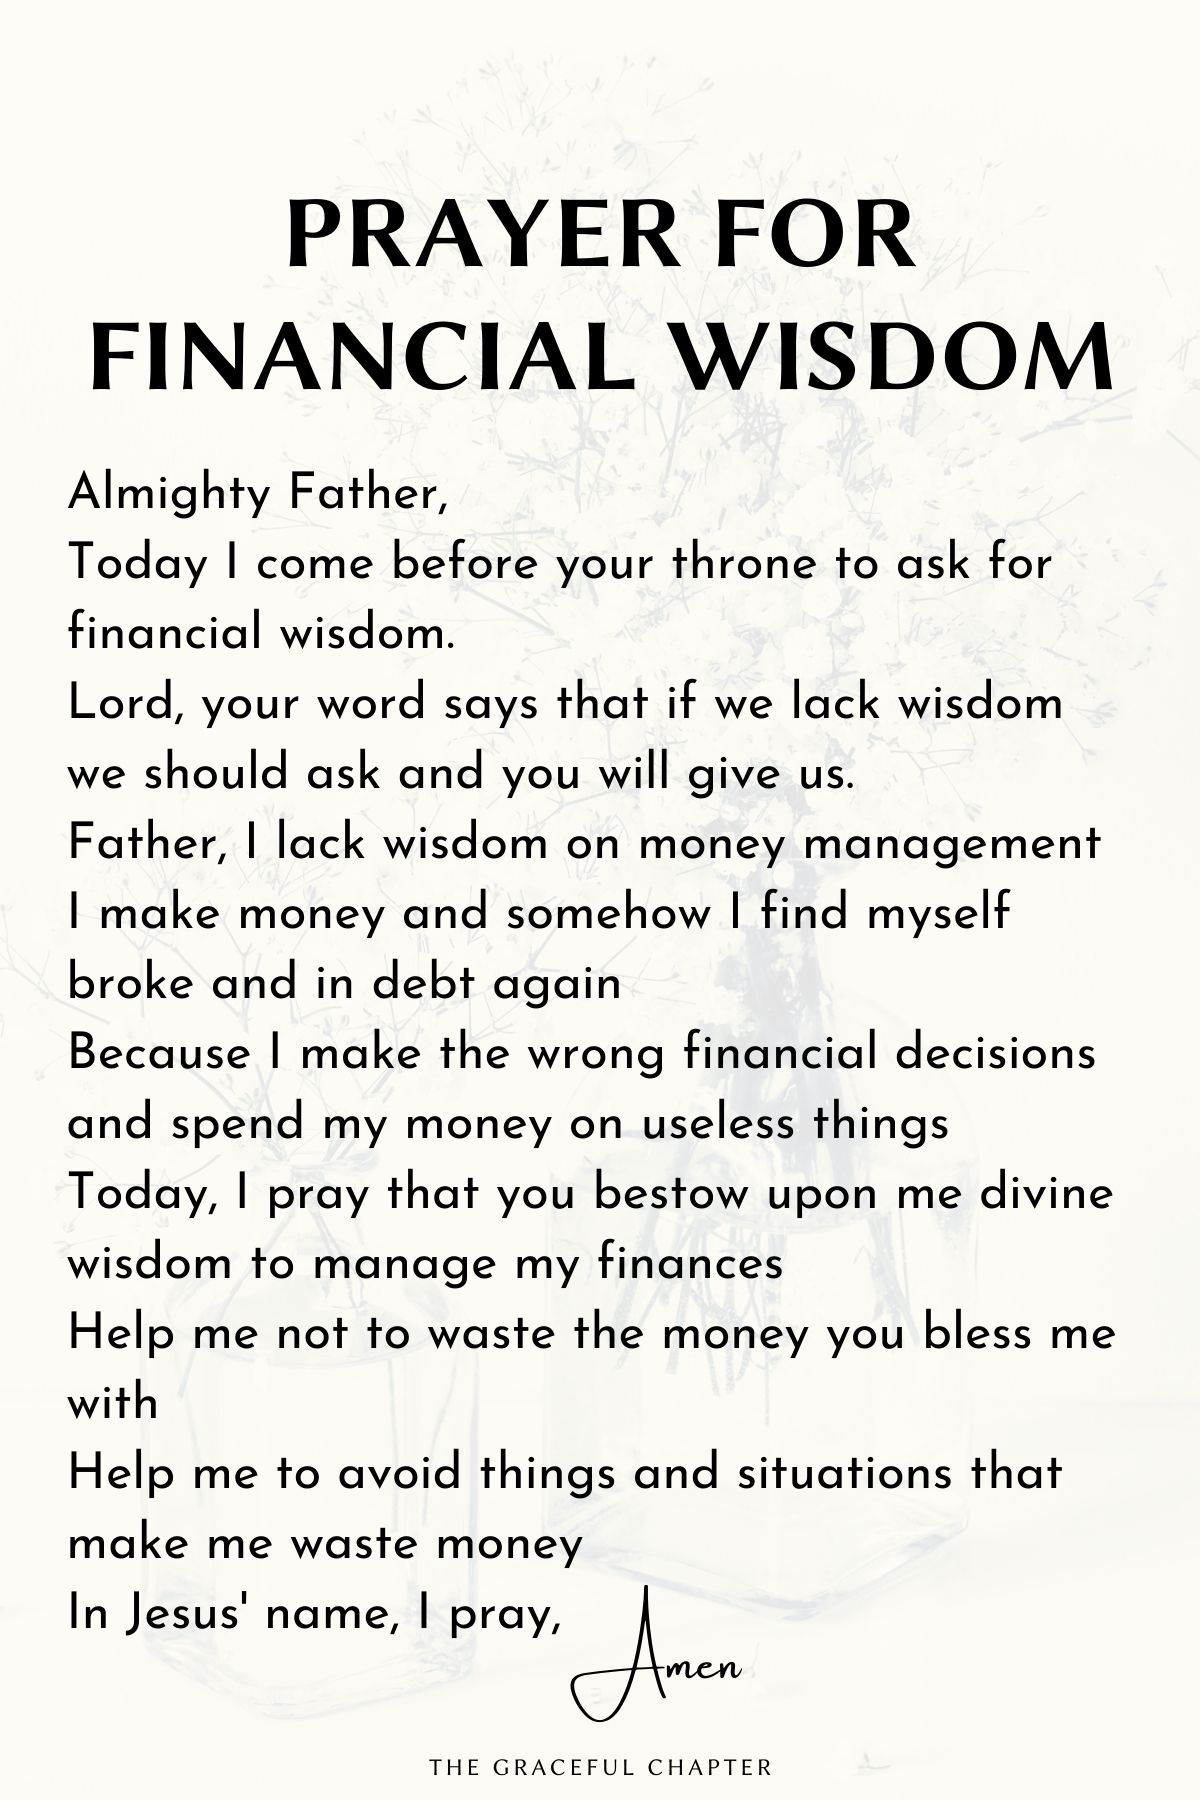 Prayer for financial wisdom